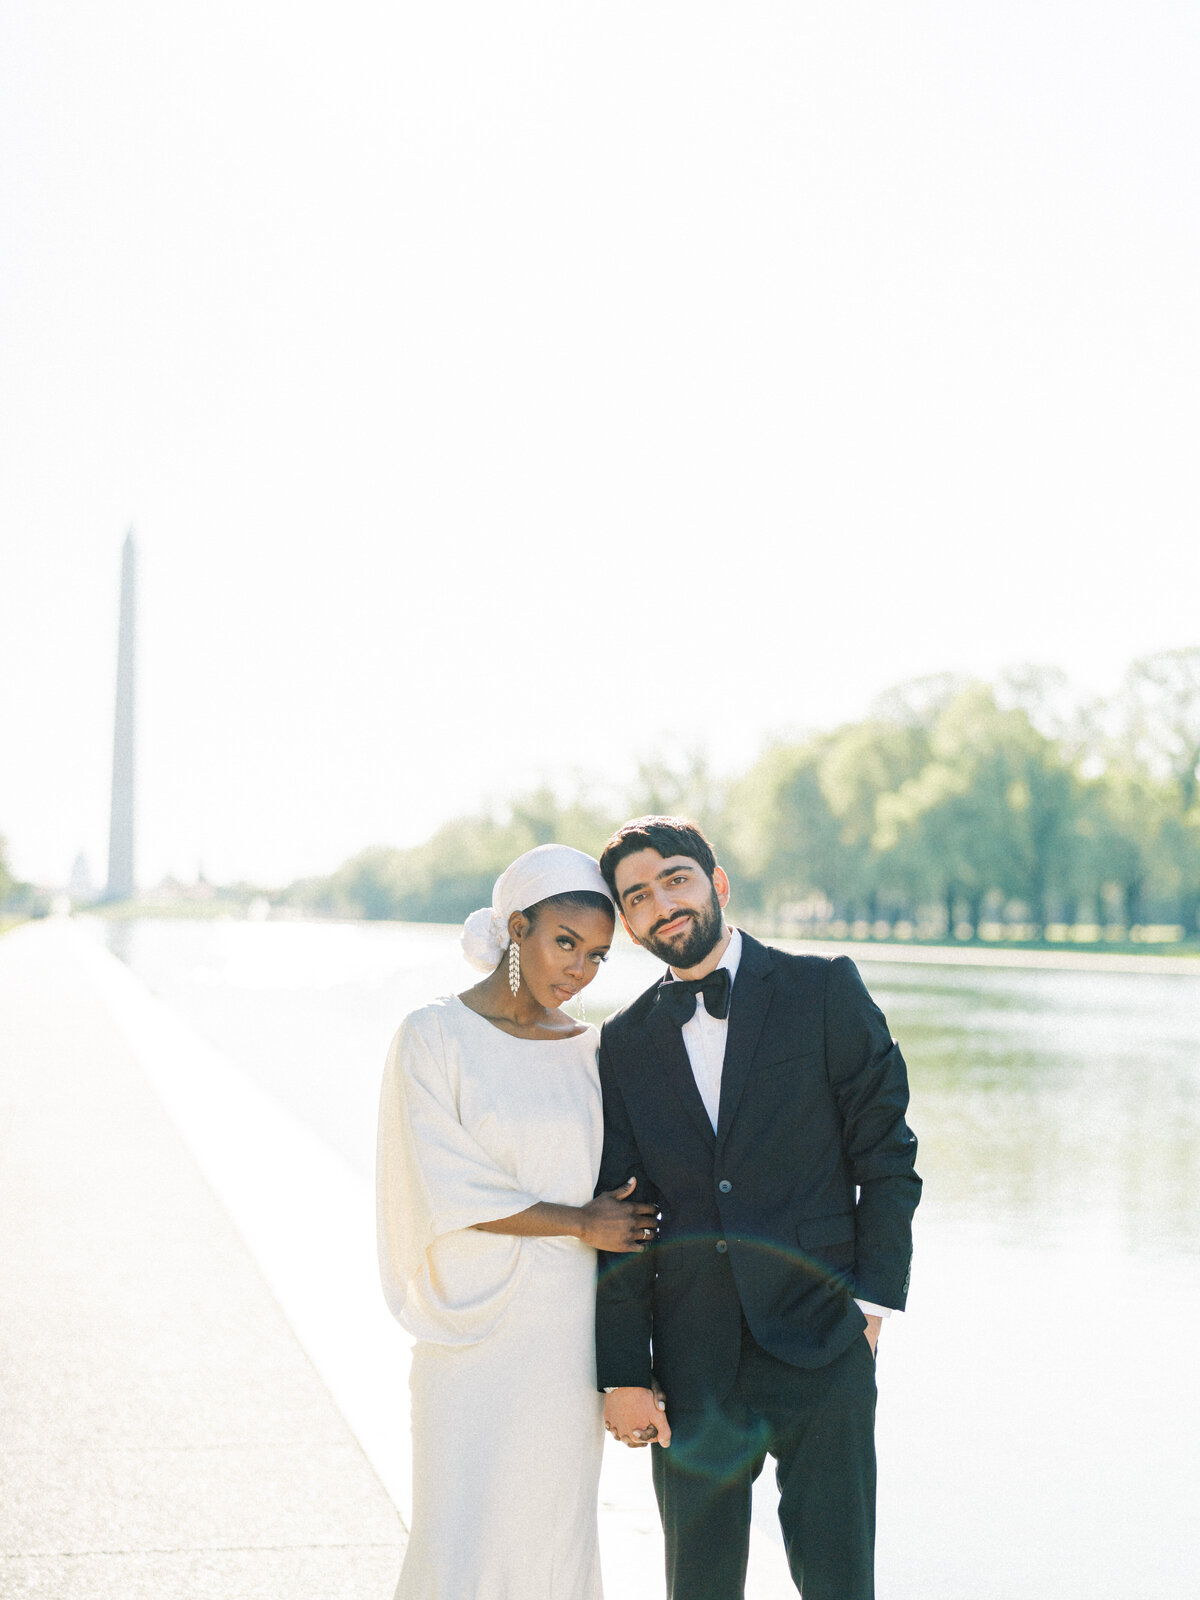 Washington DC Sunrise Lincoln Memorial Engagement Session | Amarachi Ikeji Photography 44